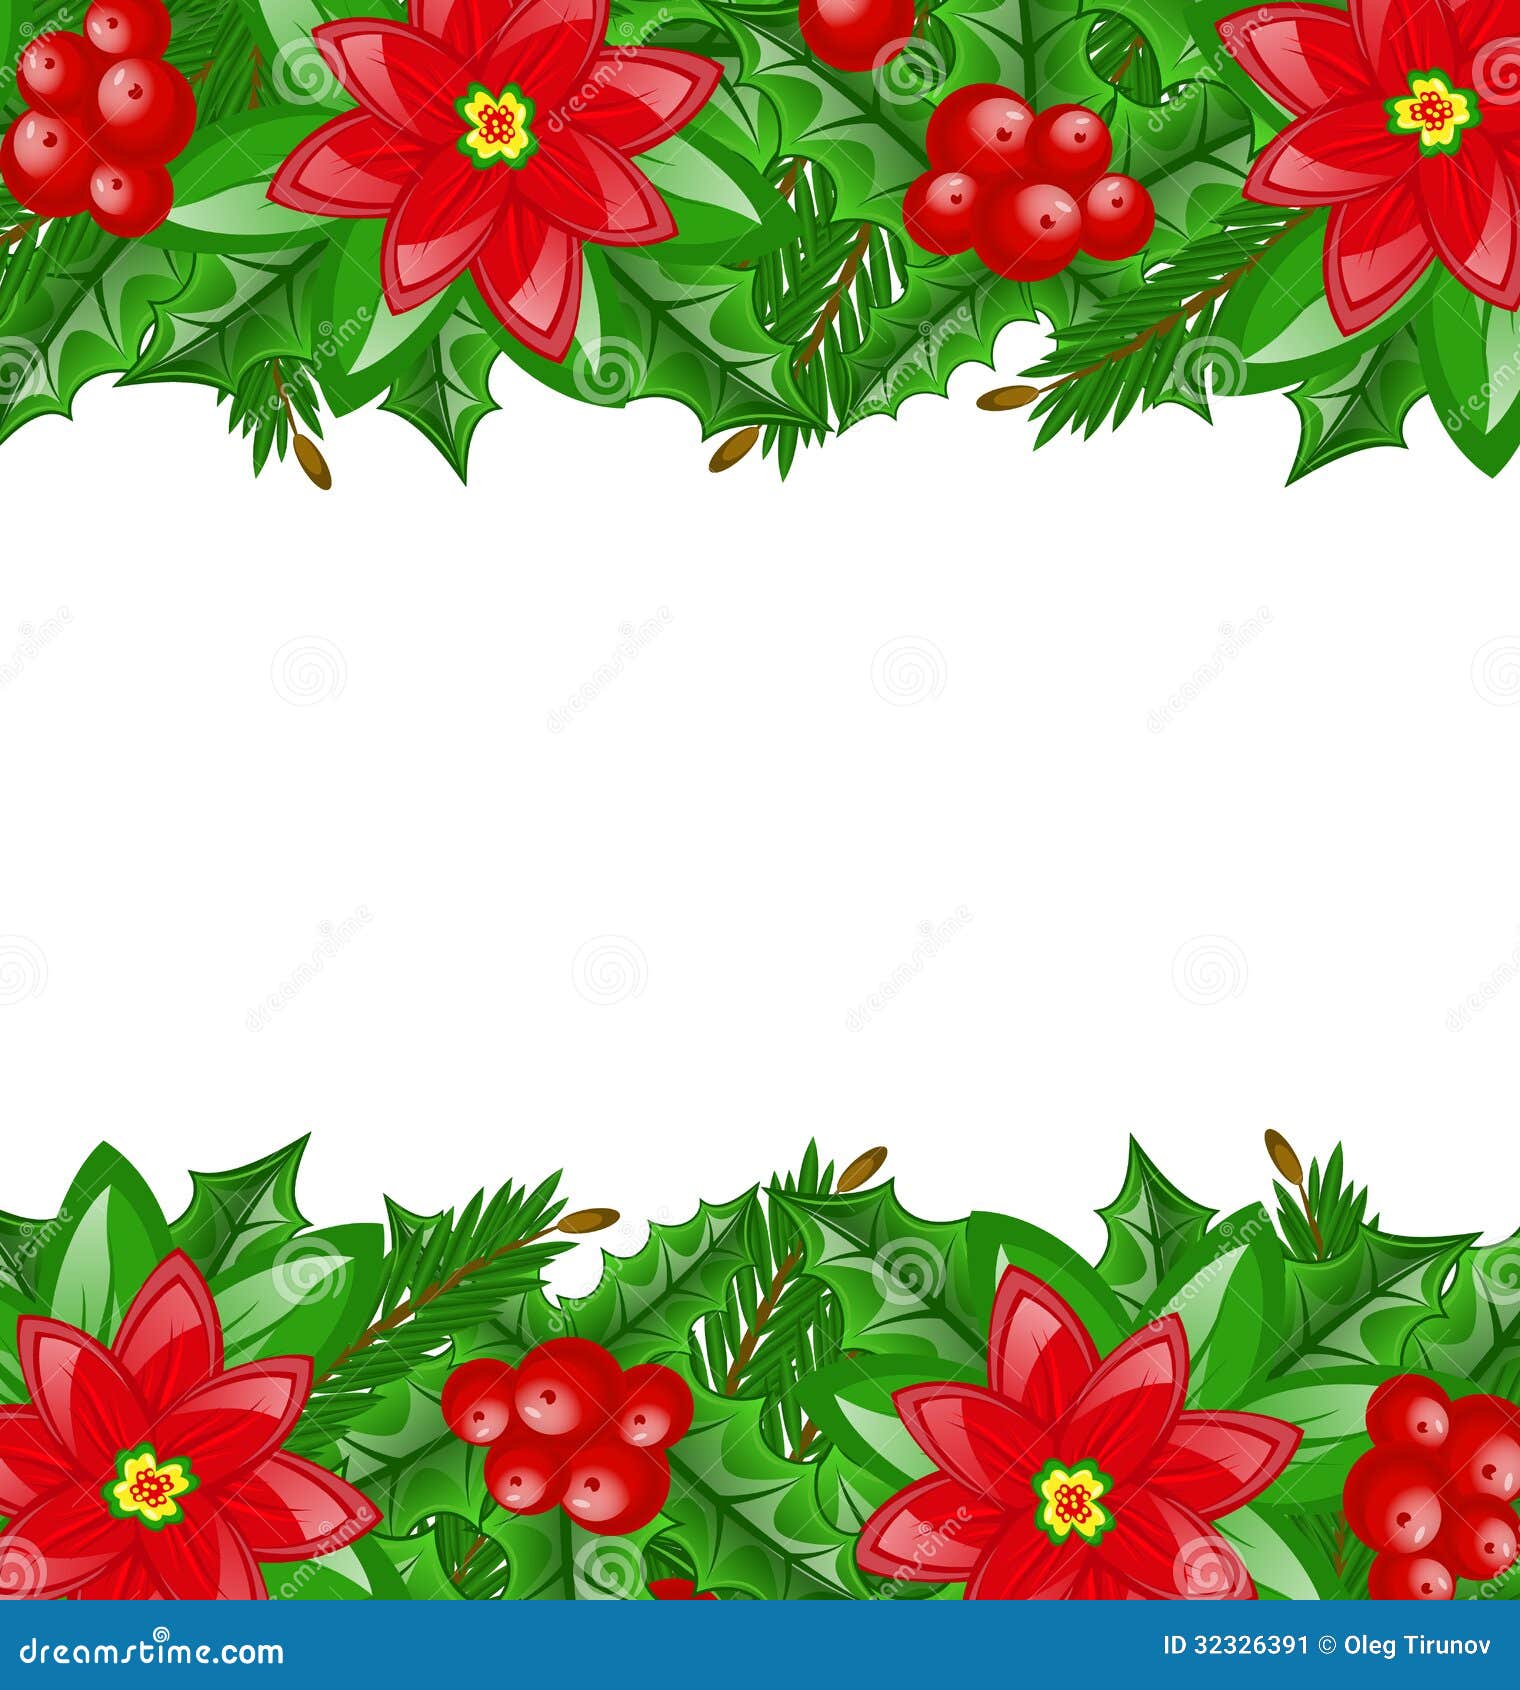 Disegni Di Stelle Di Natale.Decorazione Di Natale Con La Bacca E La Stella Di Natale Dell Agrifoglio Illustrazione Vettoriale Illustrazione Di Disegno Erba 32326391